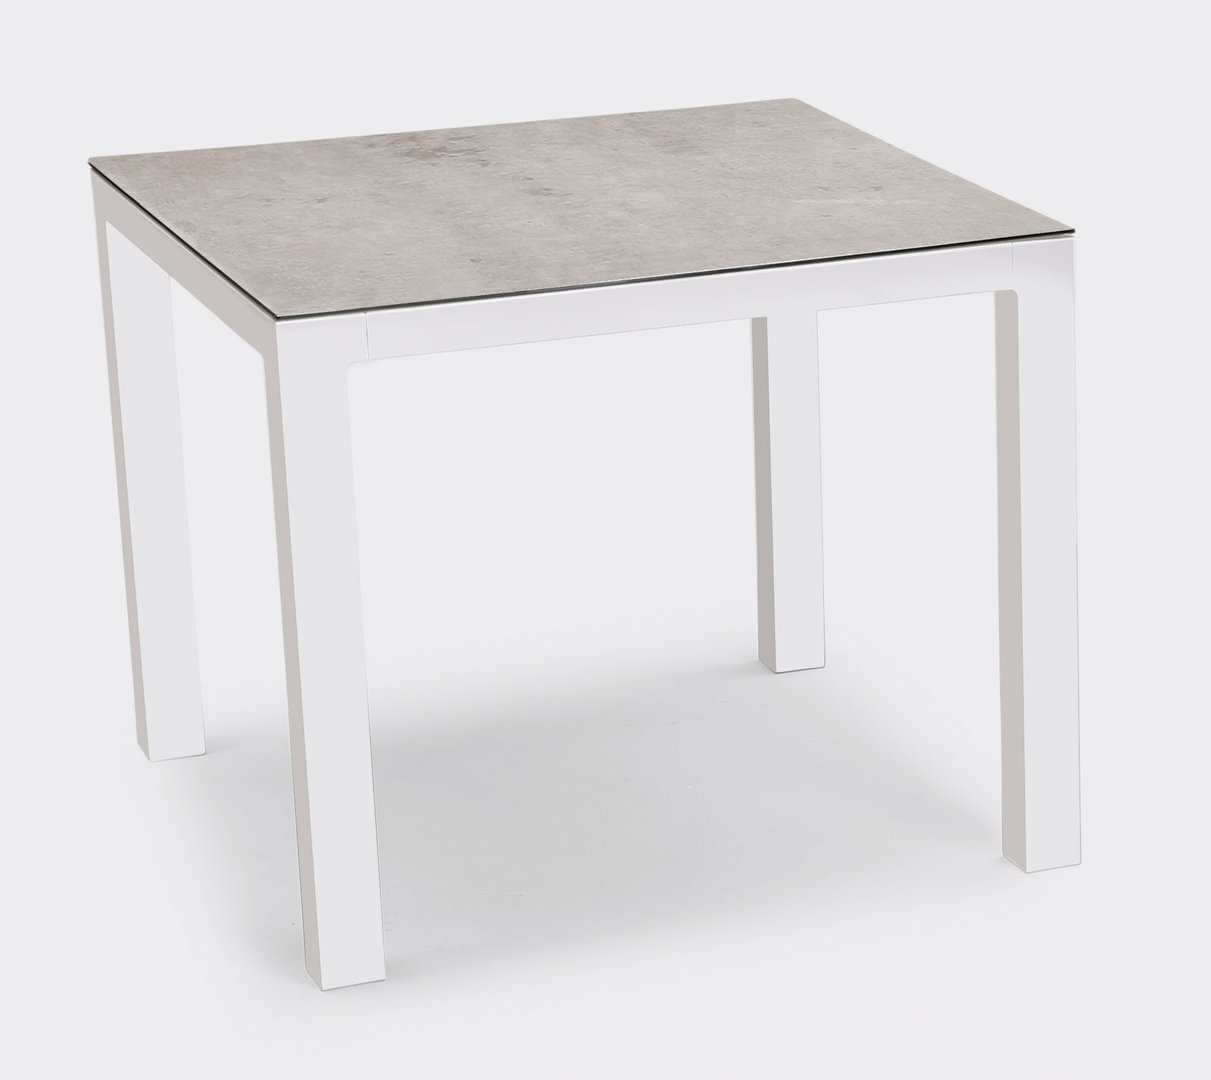 Tisch Houston 90x90 cm, weiß/silber - ebh Betriebseinrichtungen GmbH